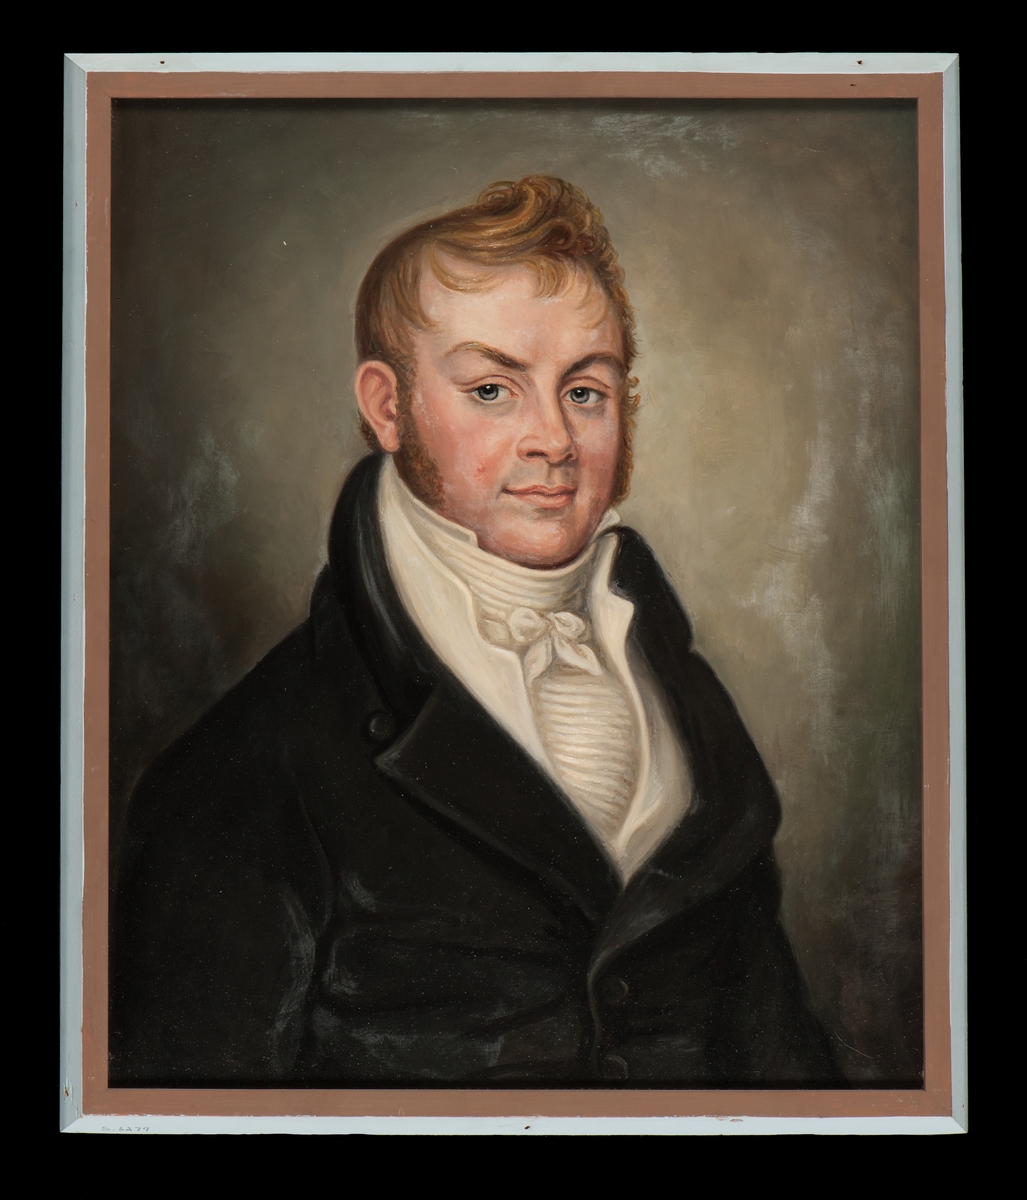 född 11 september 1783 i Gävle, död där 4 januari 1845 var en svensk skeppsredare, grosshandlare och riksdagsman.